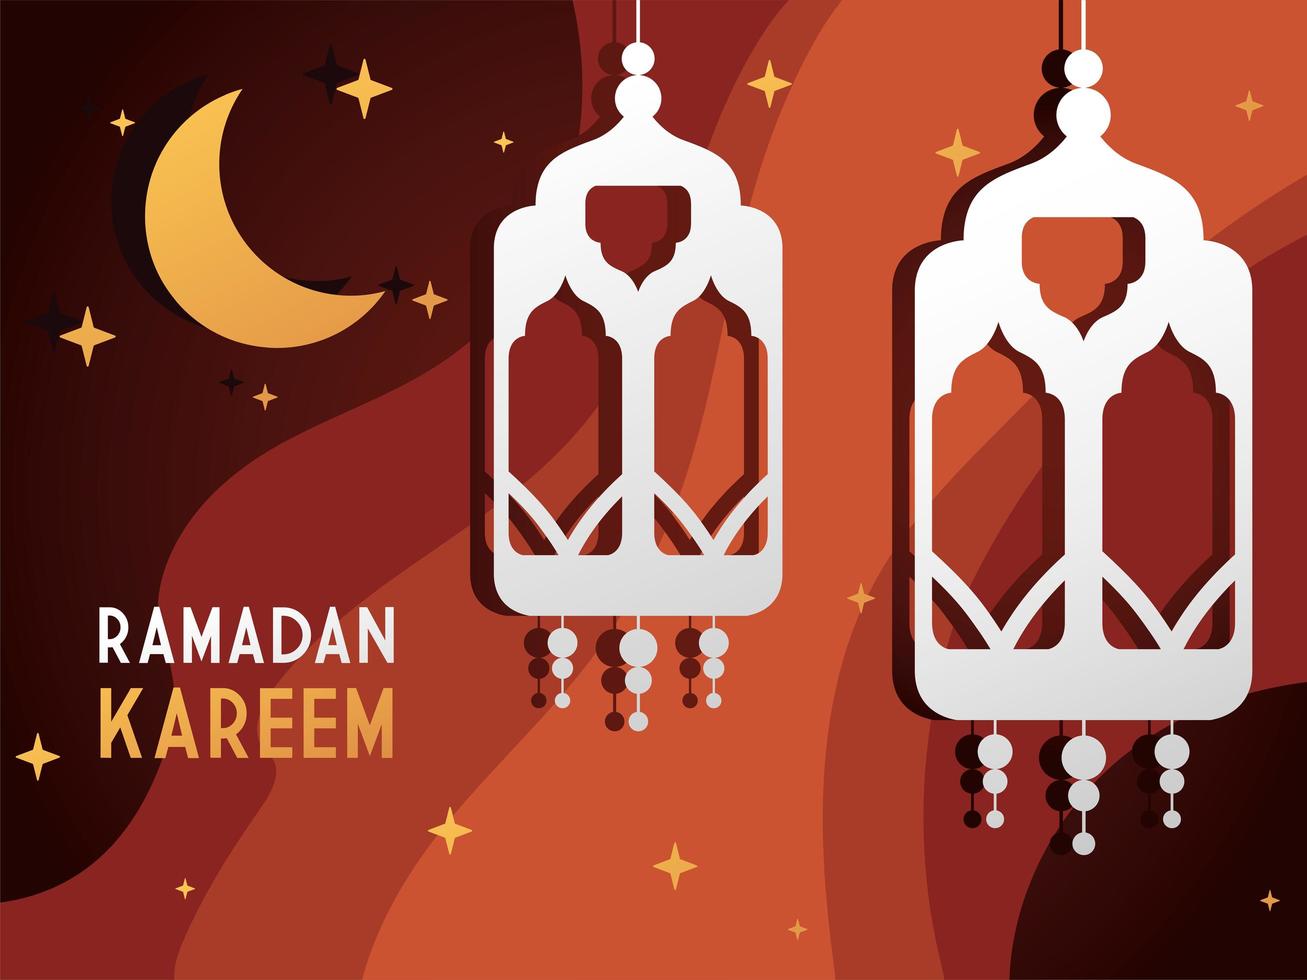 Ramadan Kareem dekorative Papierlaterne und Mond sternenklarer Hintergrund vektor